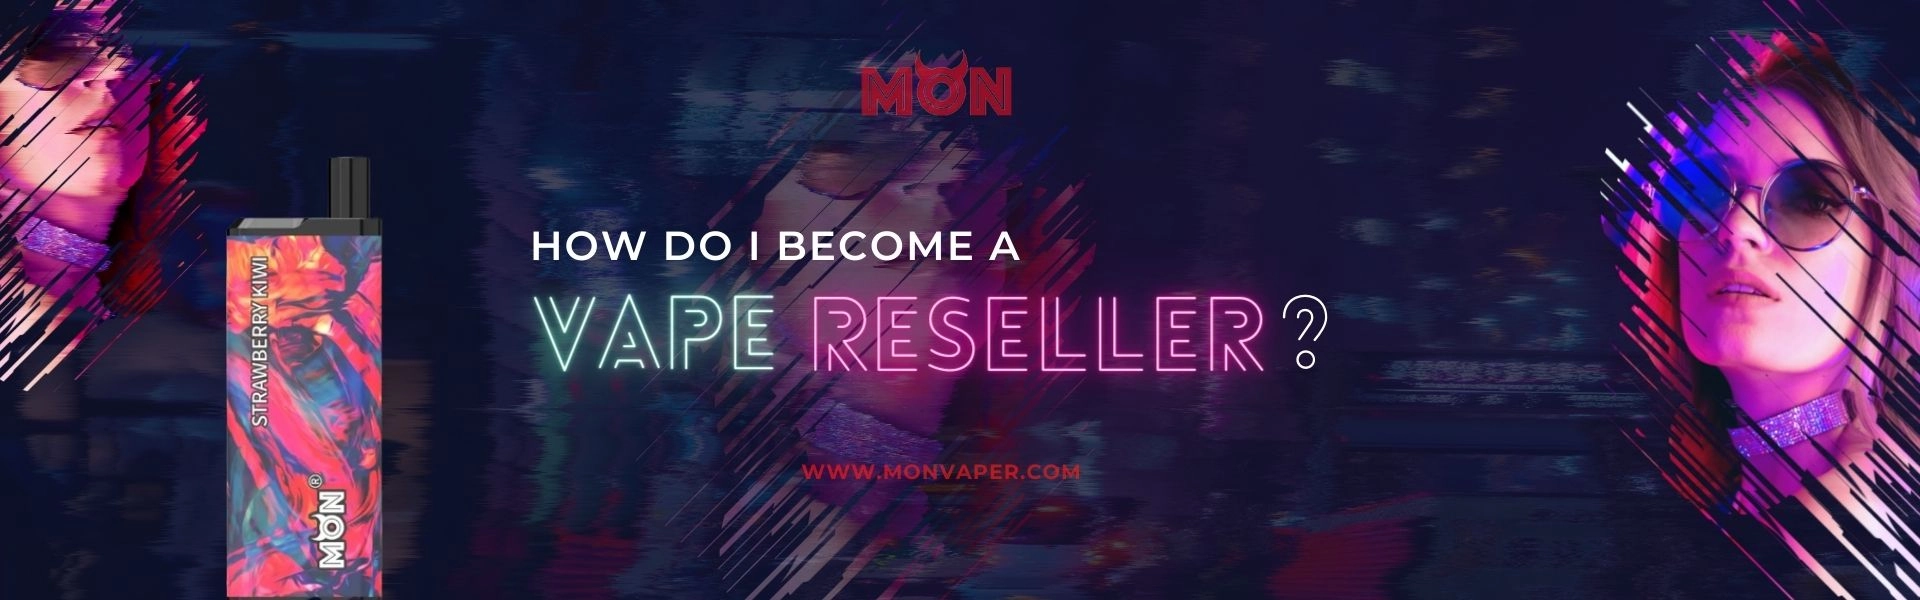 become a vape reseller